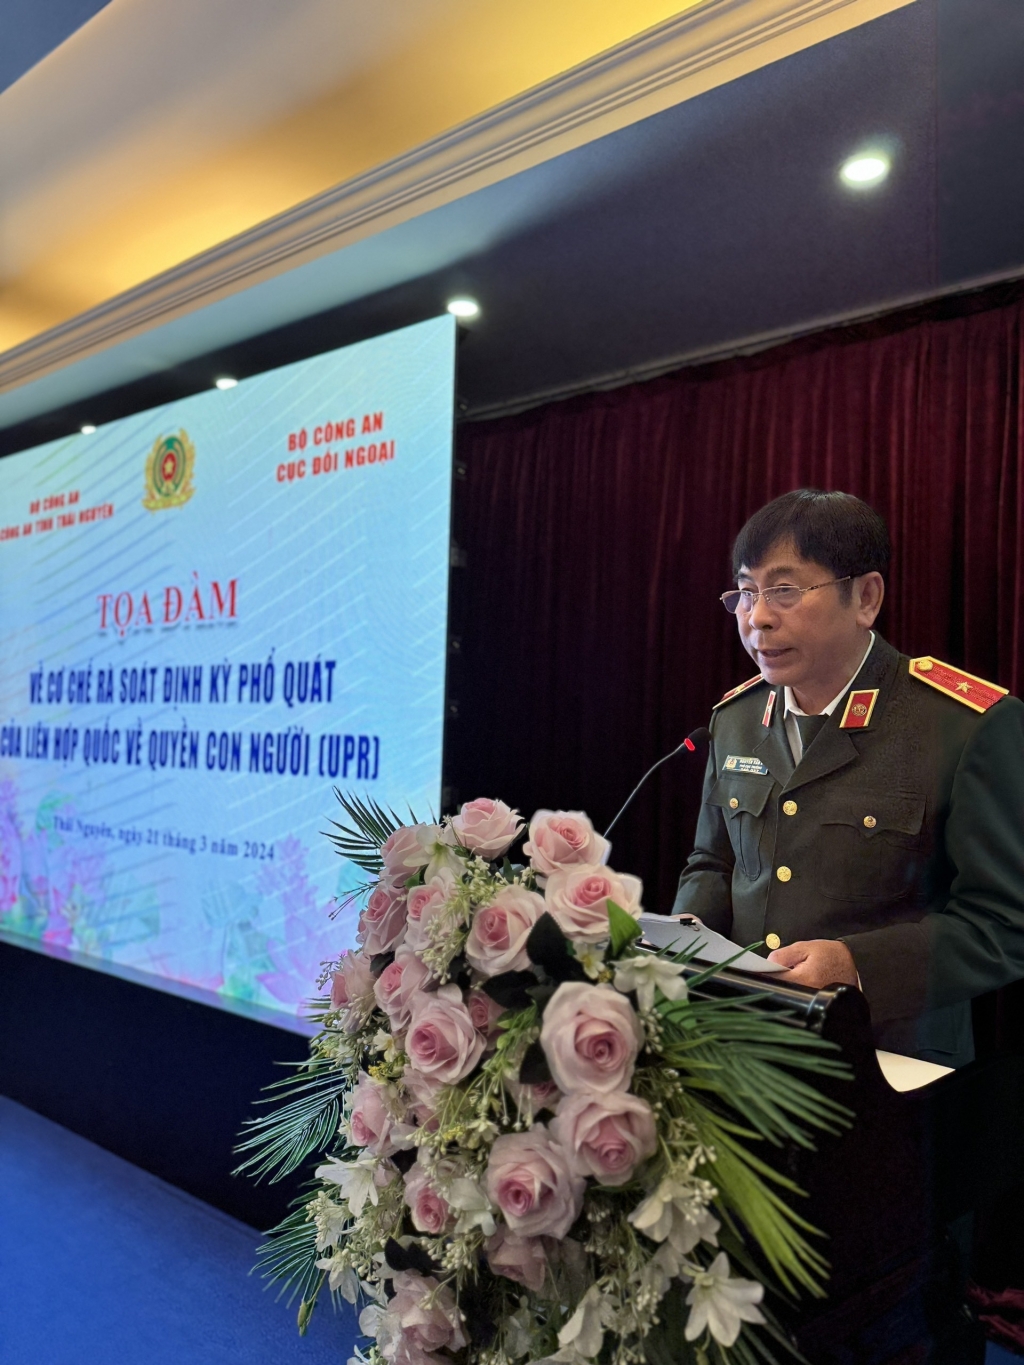 Заместитель руководителя Управления по внешним связям Министерства внутренних дел, Генерал-майор Нгуен Ван Ки, выступает на конференции